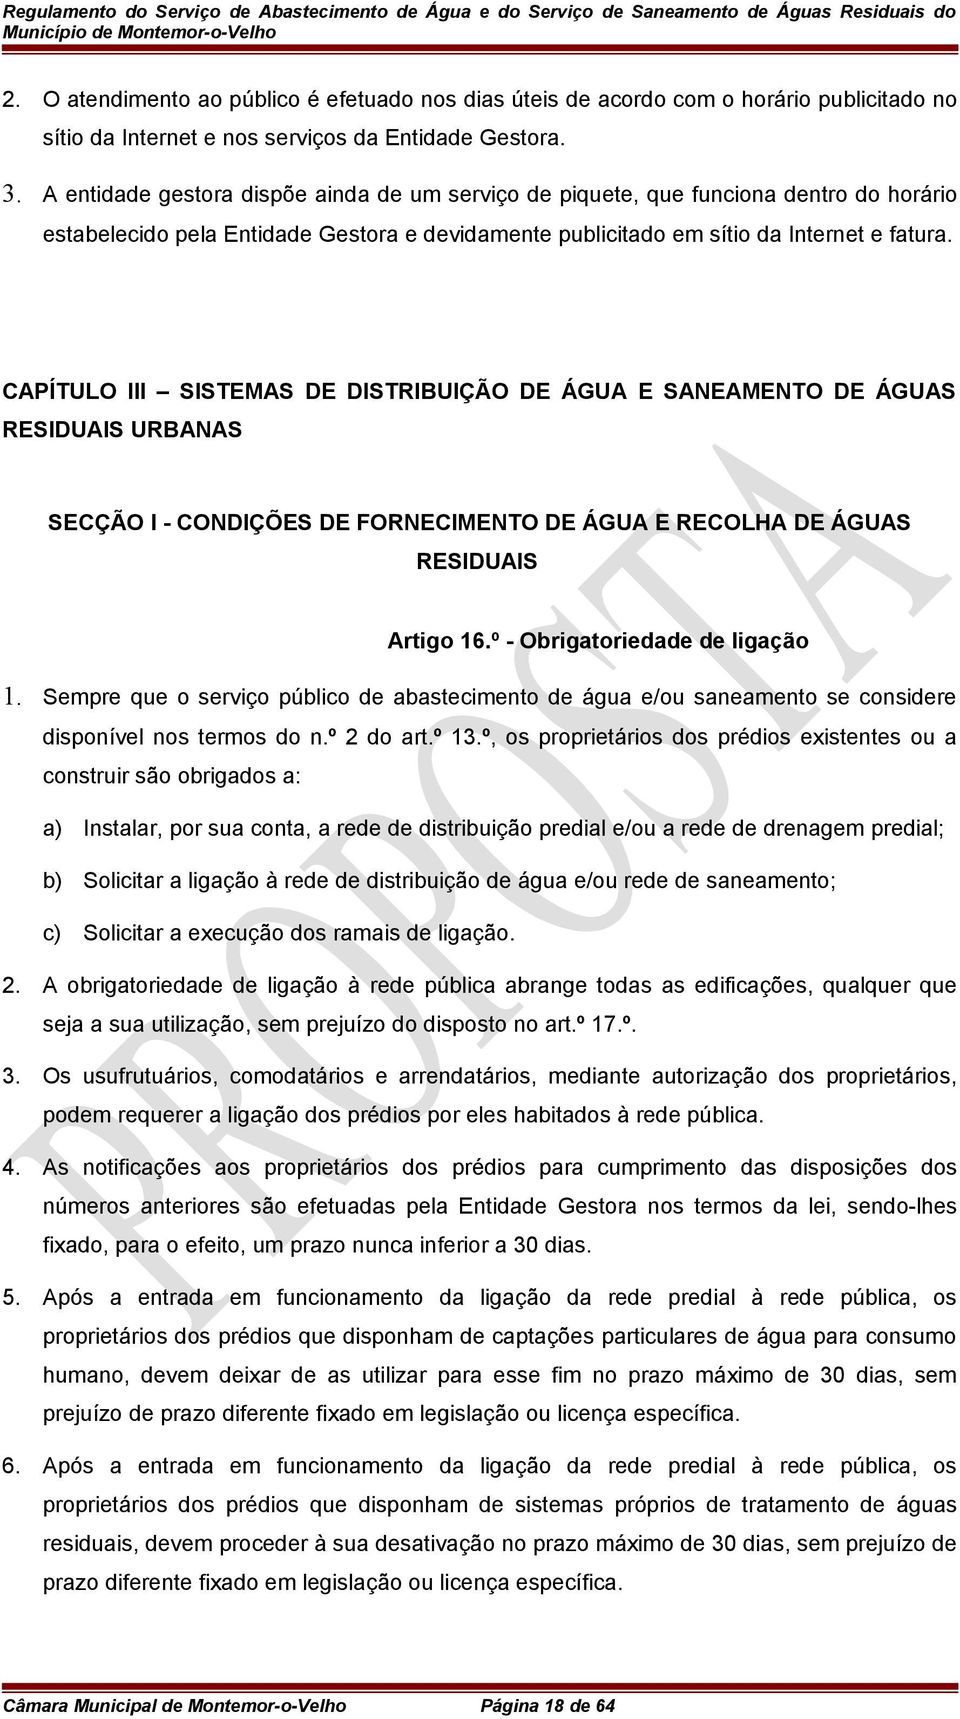 CAPÍTULO III SISTEMAS DE DISTRIBUIÇÃO DE ÁGUA E SANEAMENTO DE ÁGUAS RESIDUAIS URBANAS SECÇÃO I - CONDIÇÕES DE FORNECIMENTO DE ÁGUA E RECOLHA DE ÁGUAS RESIDUAIS Artigo 16.